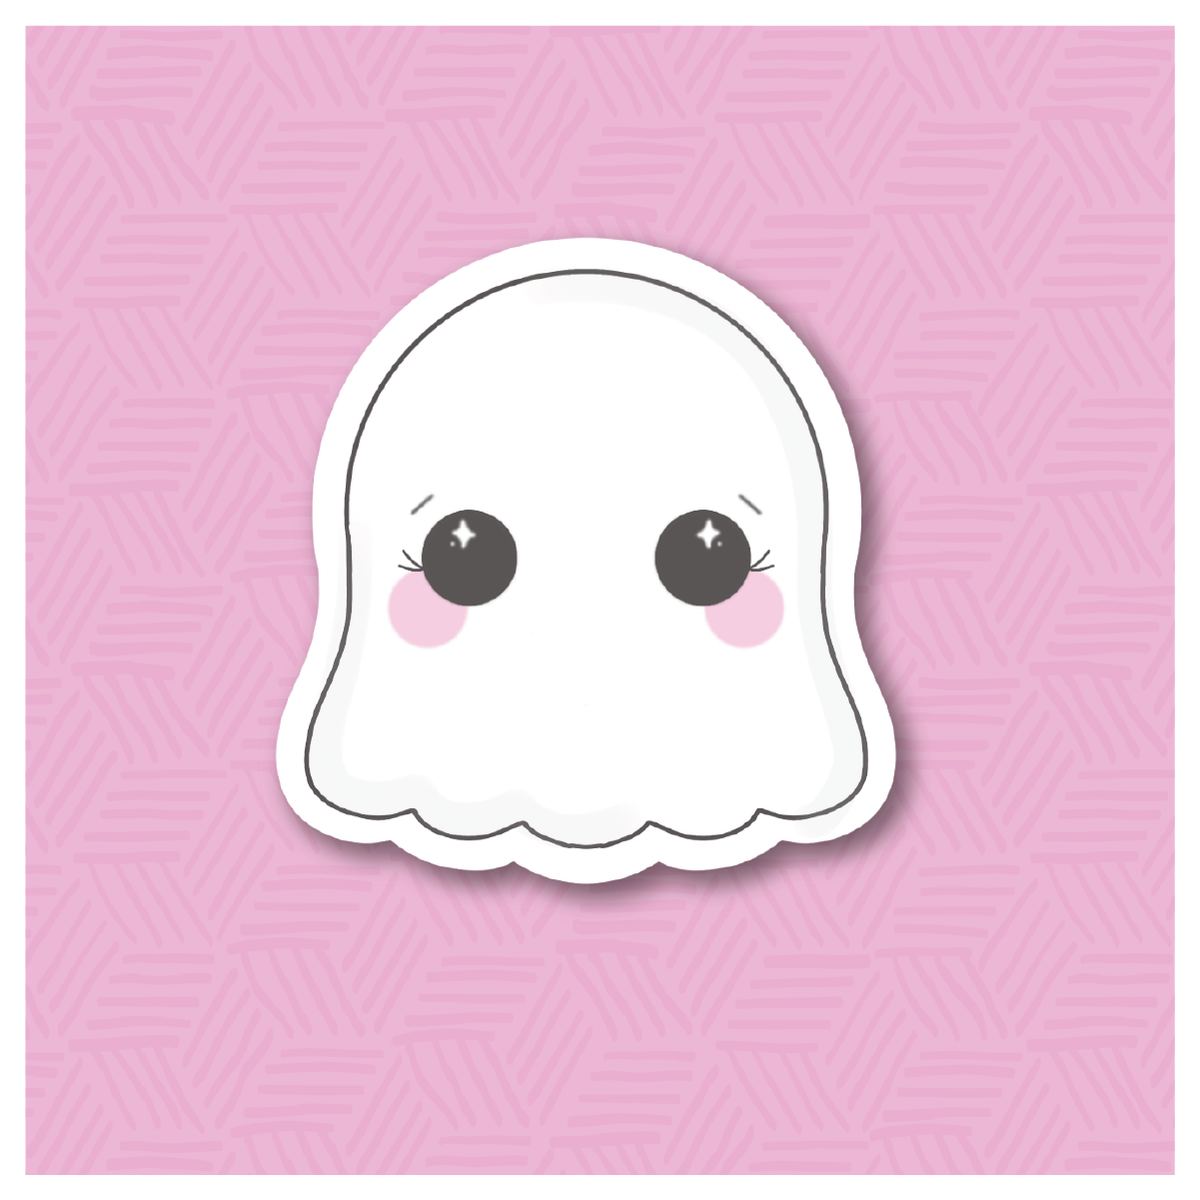 Chibi Ghost Digital Sticker File